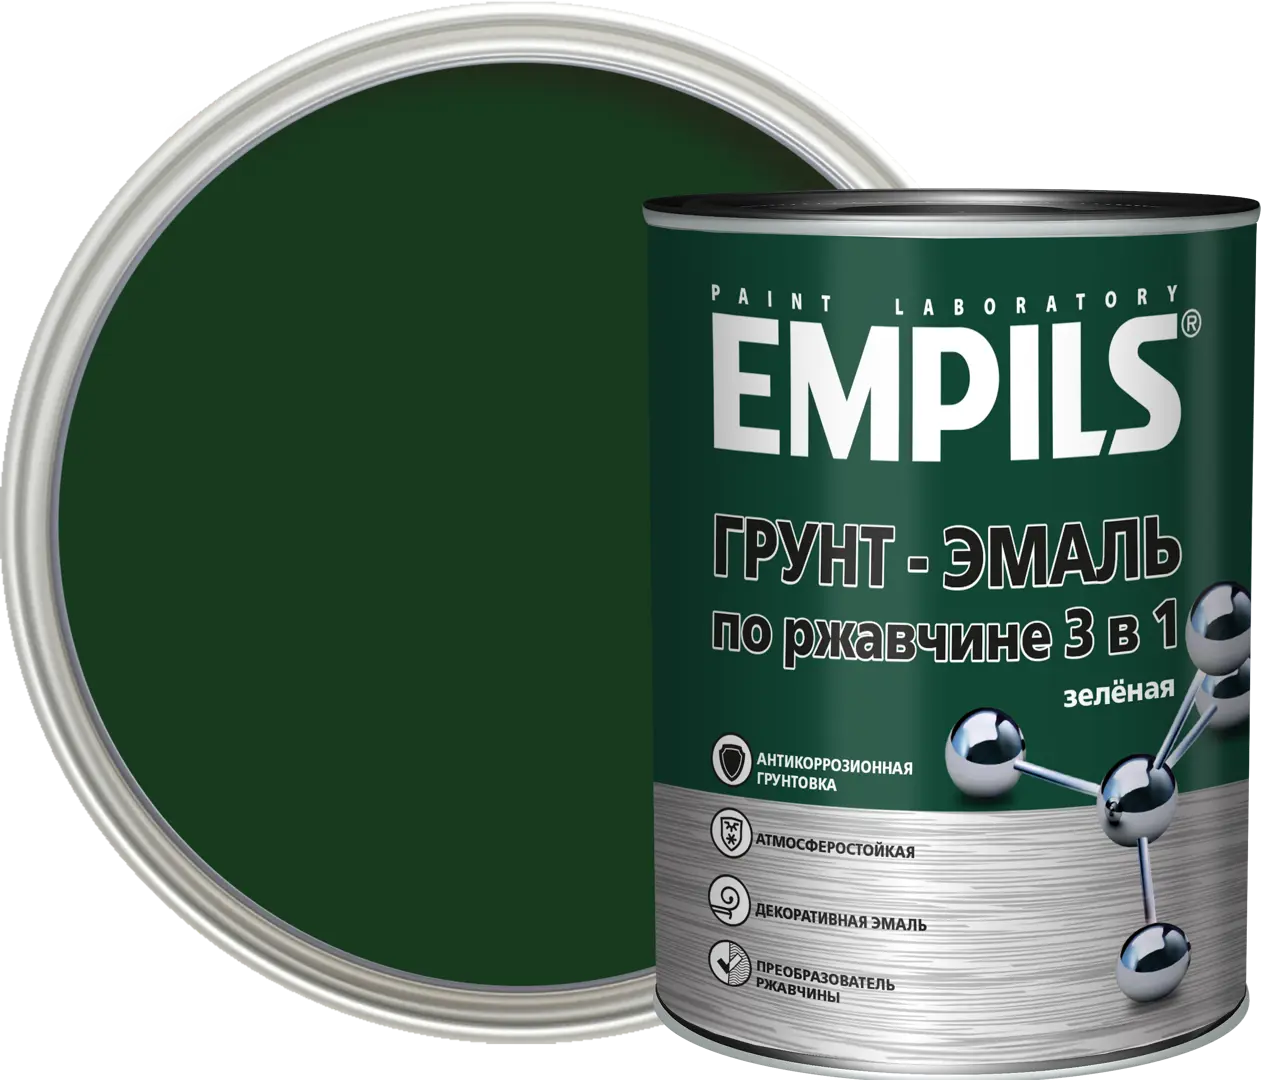 Грунт-эмаль по ржавчине 3 в 1 Empils PL цвет зеленый 0.9 кг